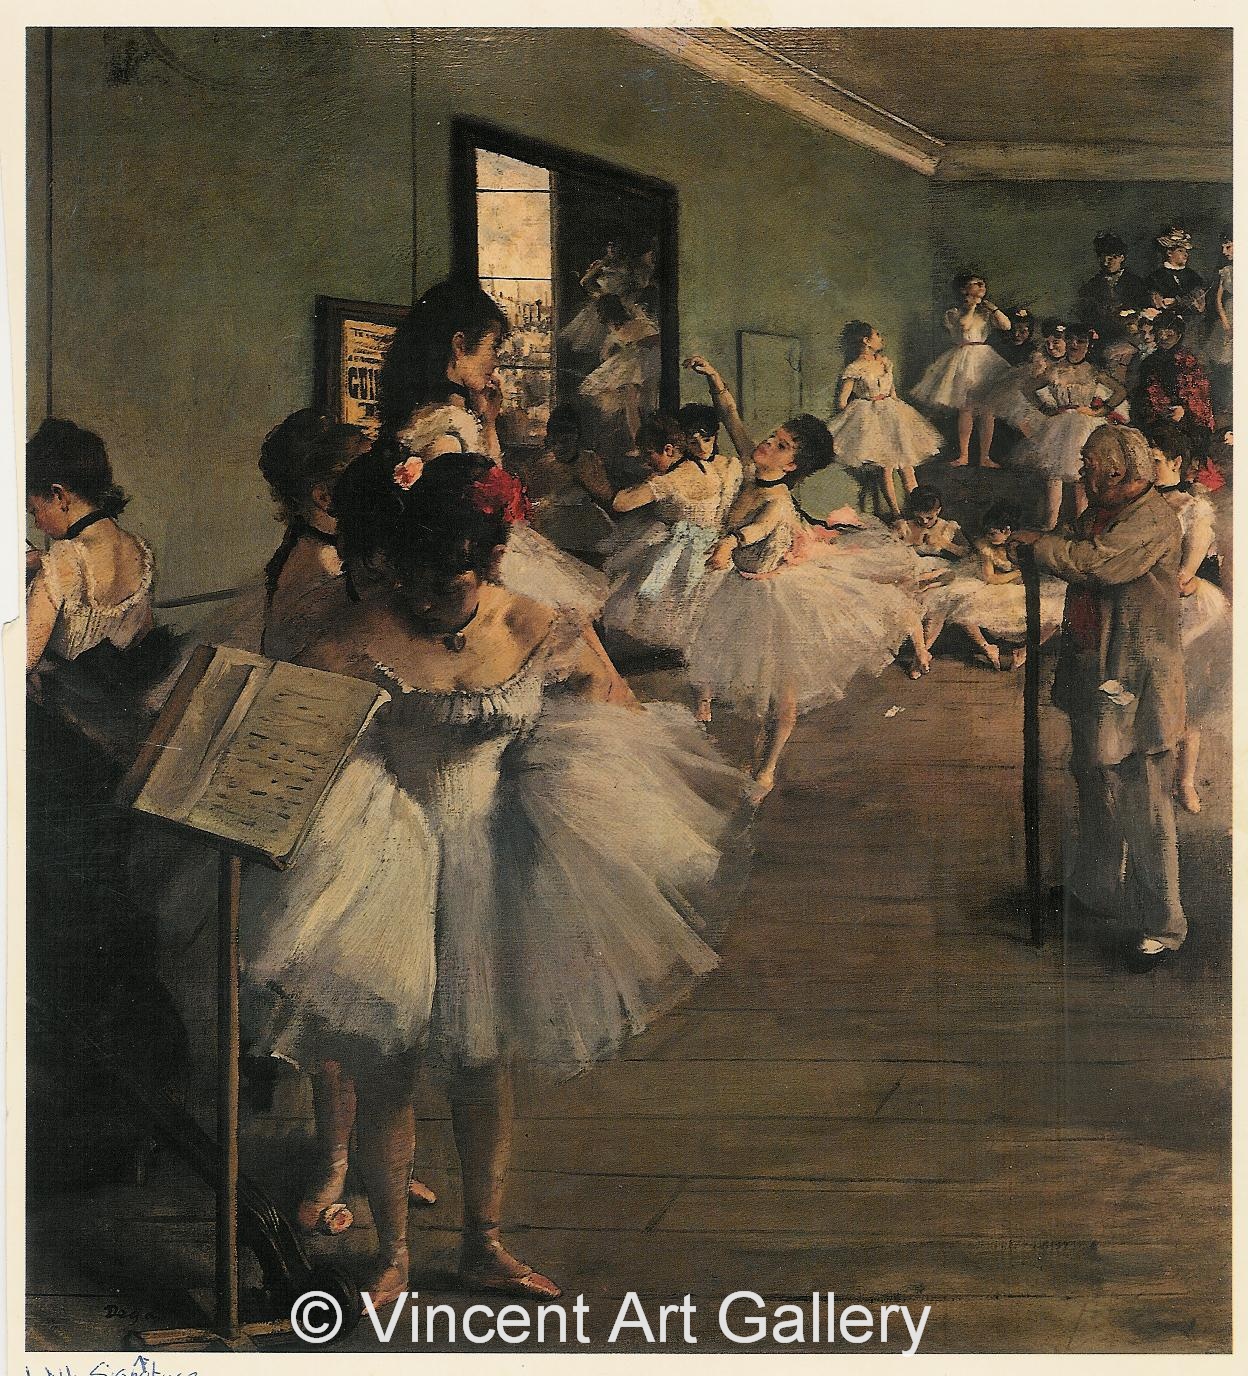 A112, DEGAS, The Dance Class, 1874